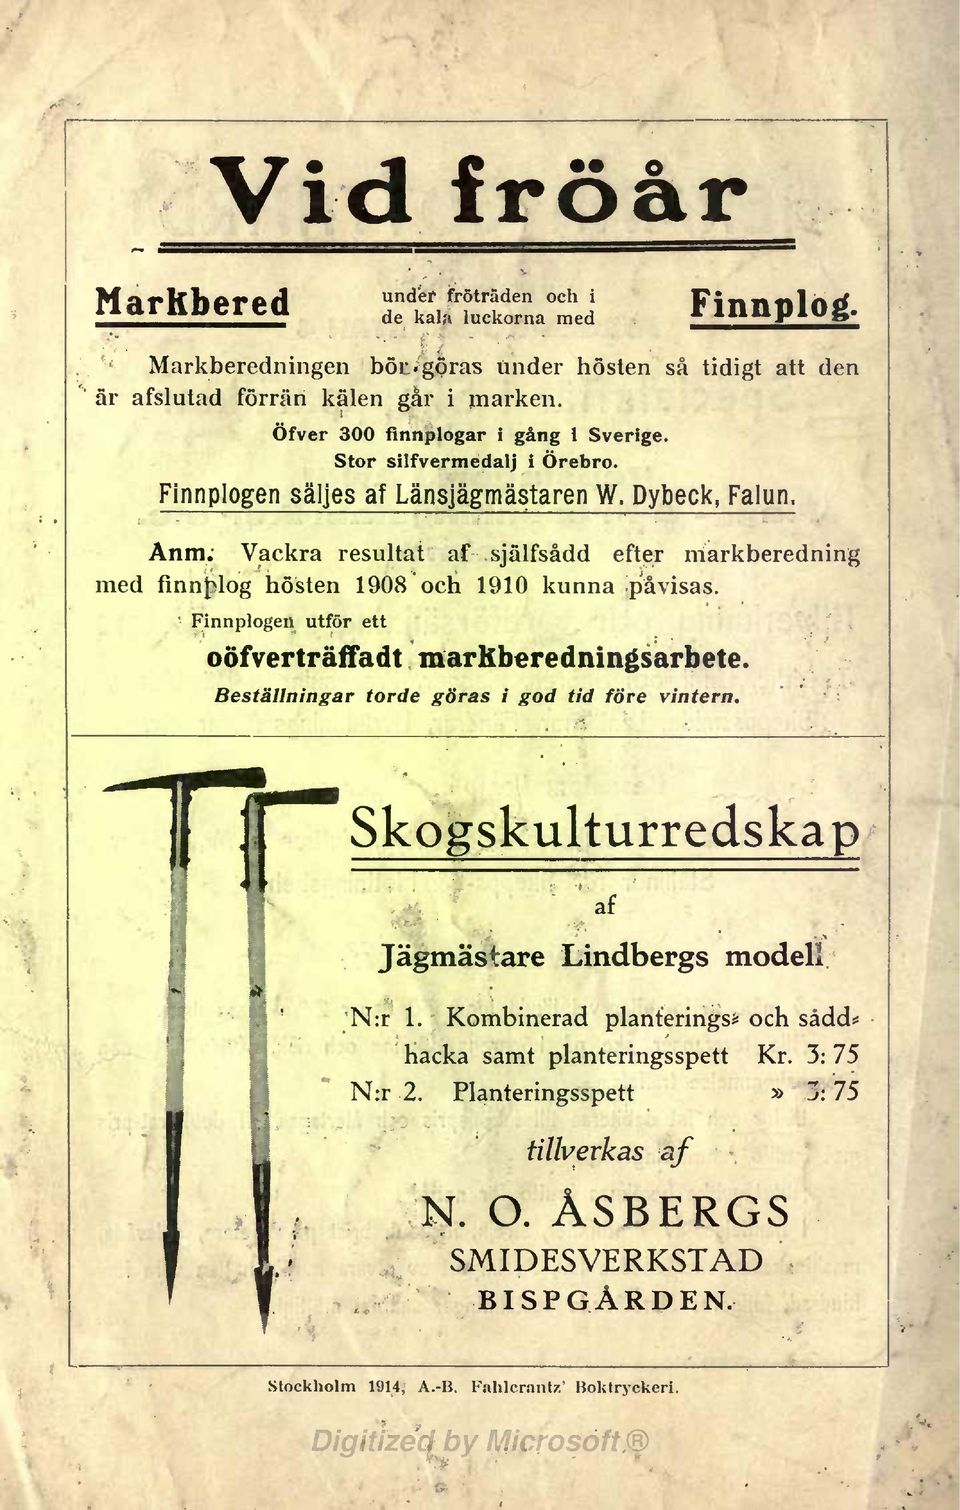 Vackra resultat af själfsådd efter markberedning med finnfilog hösten 1908 och 1910 kunna påvisas. Finnplogen utför ett oöfverträffadt markberedningsarbete.